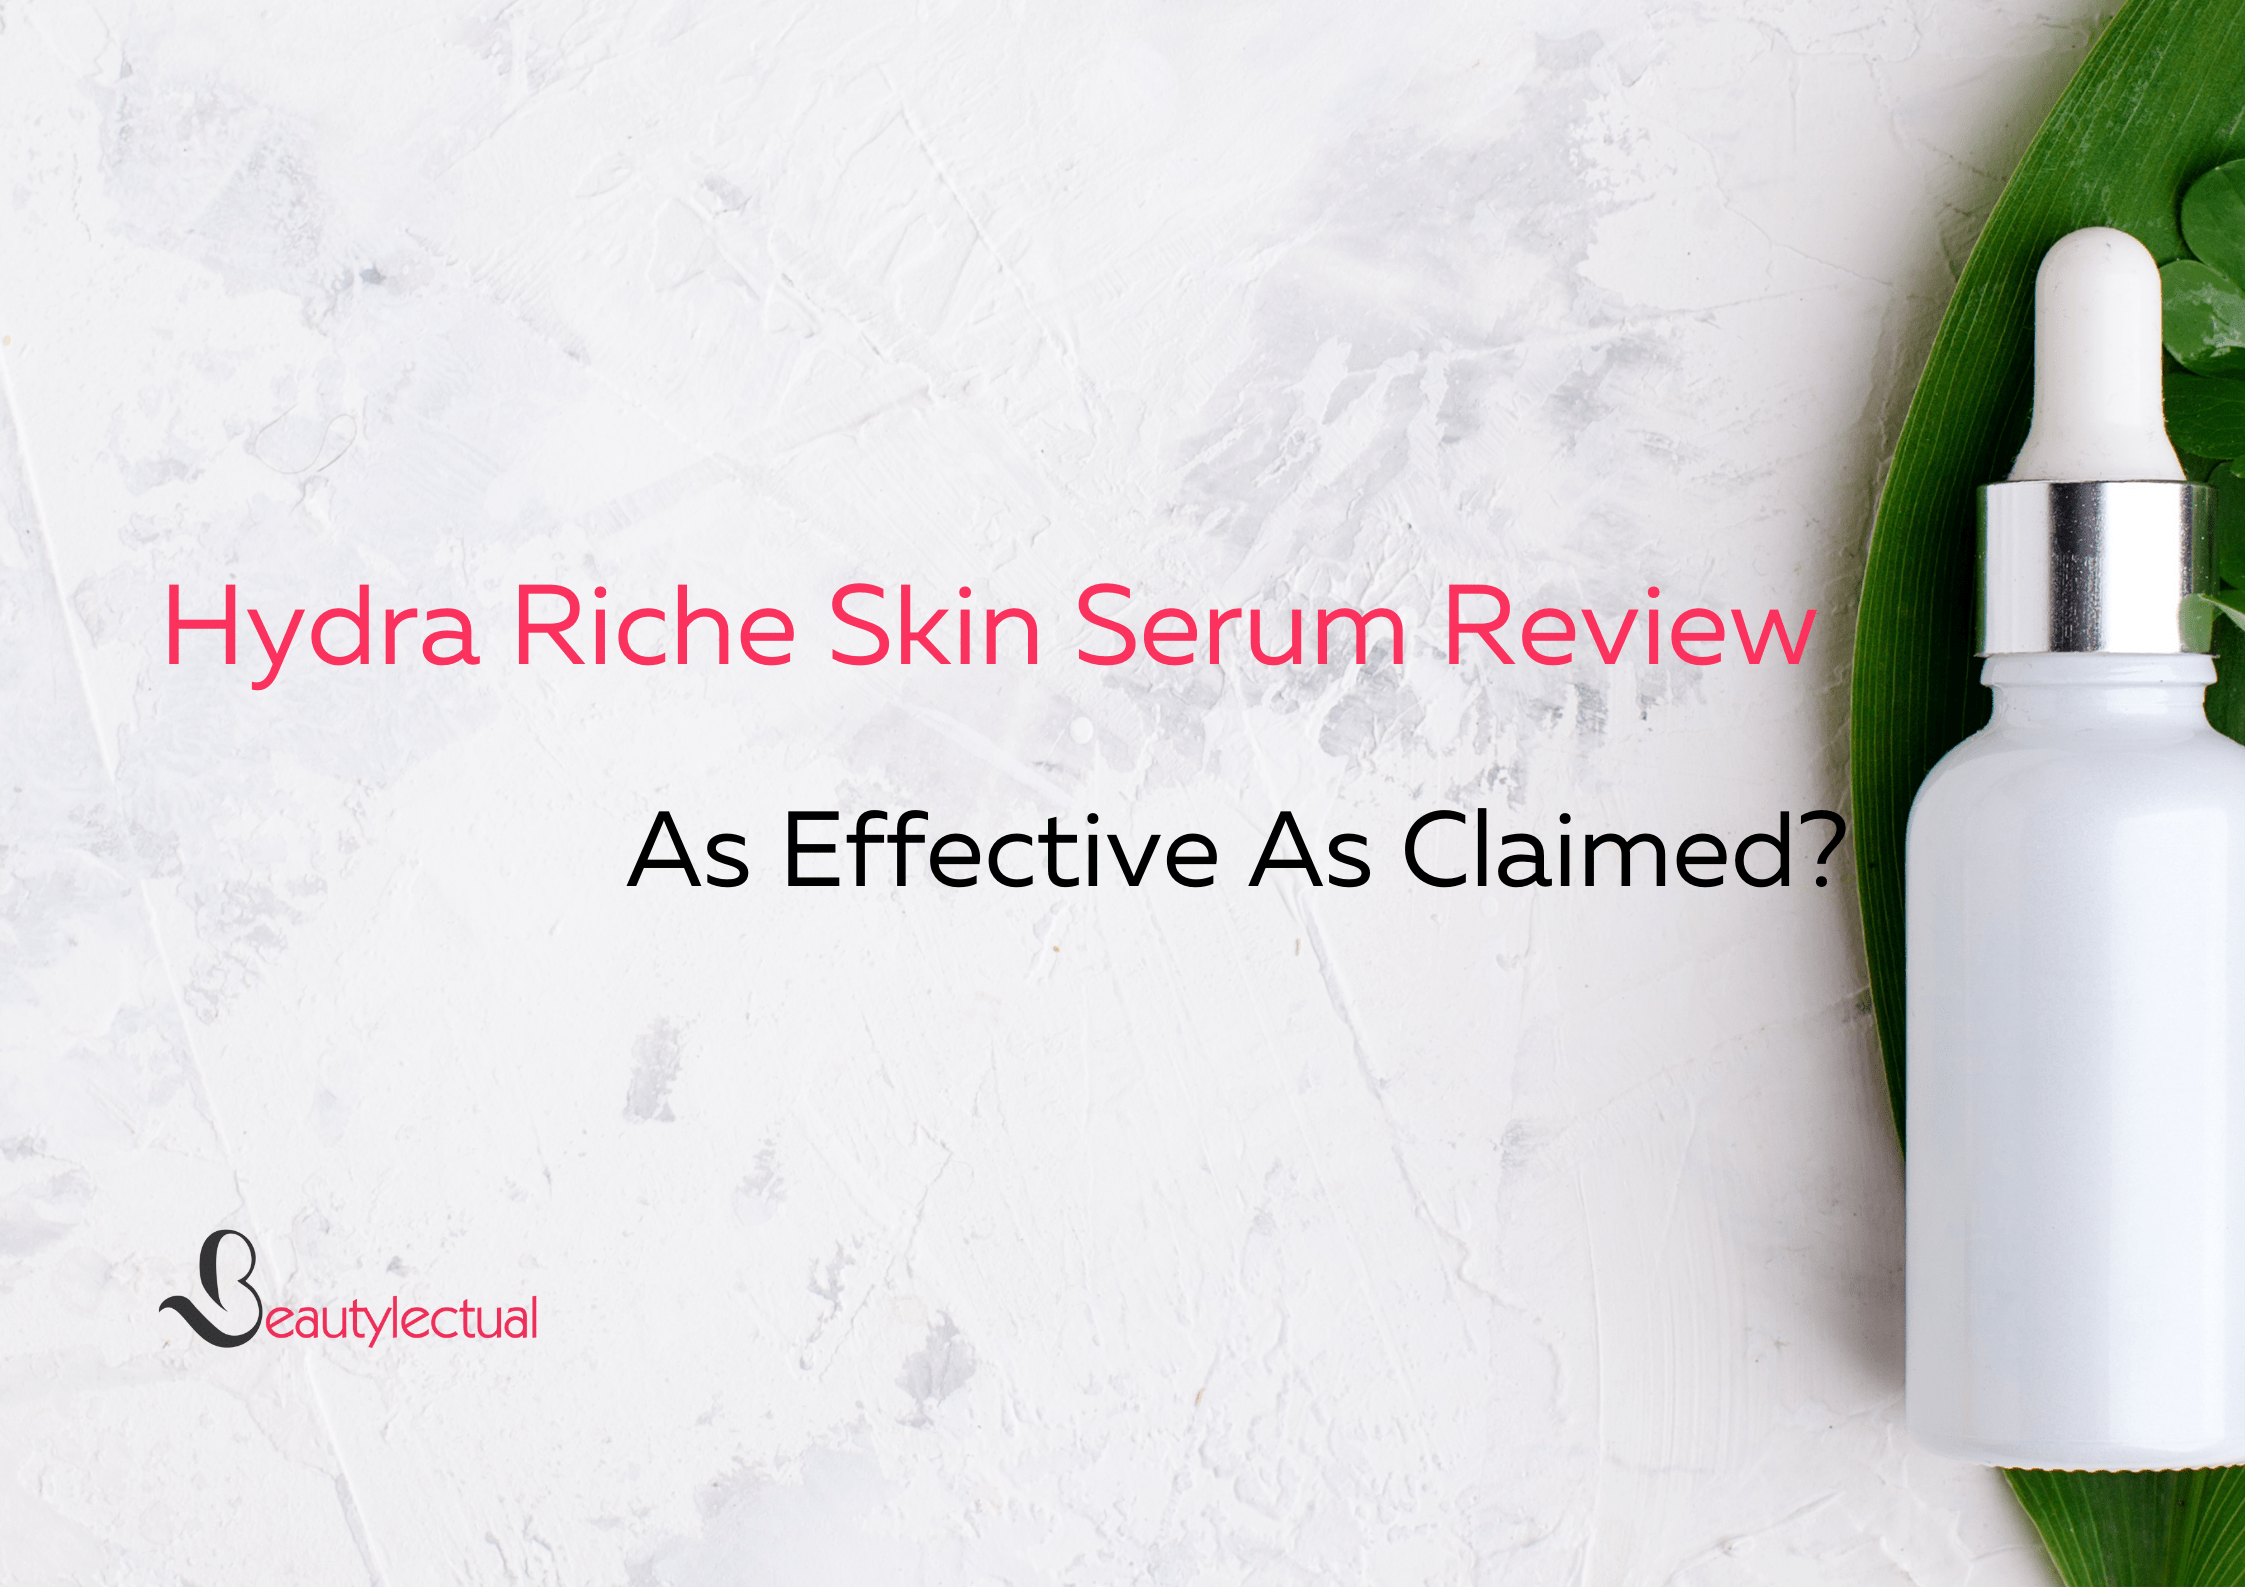 Hydra Riche Skin Serum Review